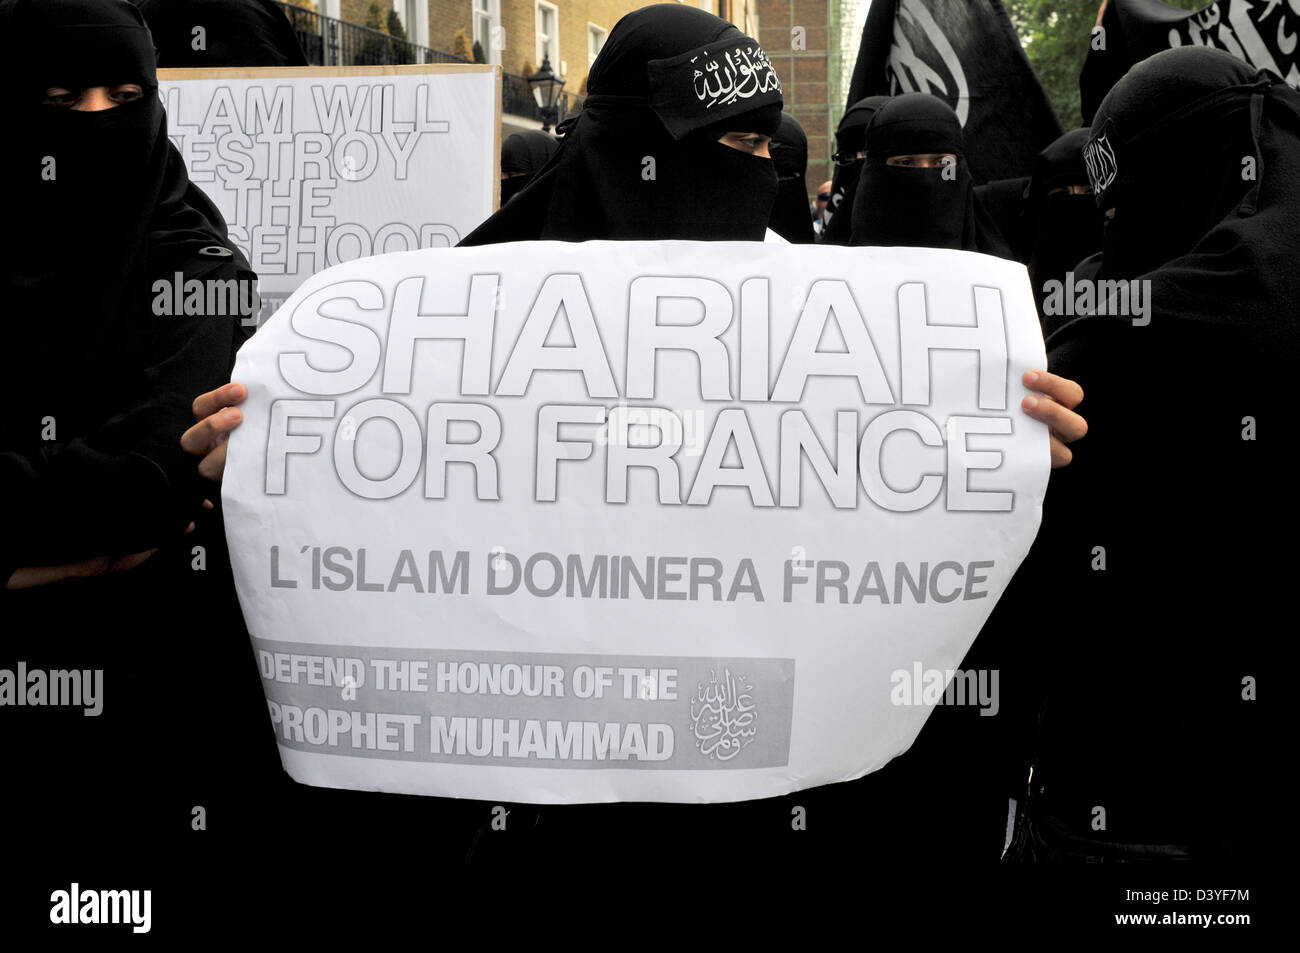 Frauen Demonstranten tragen schwarze Burkas halten ein Schild mit der Aufschrift "Scharia für Frankreich" Stockfoto